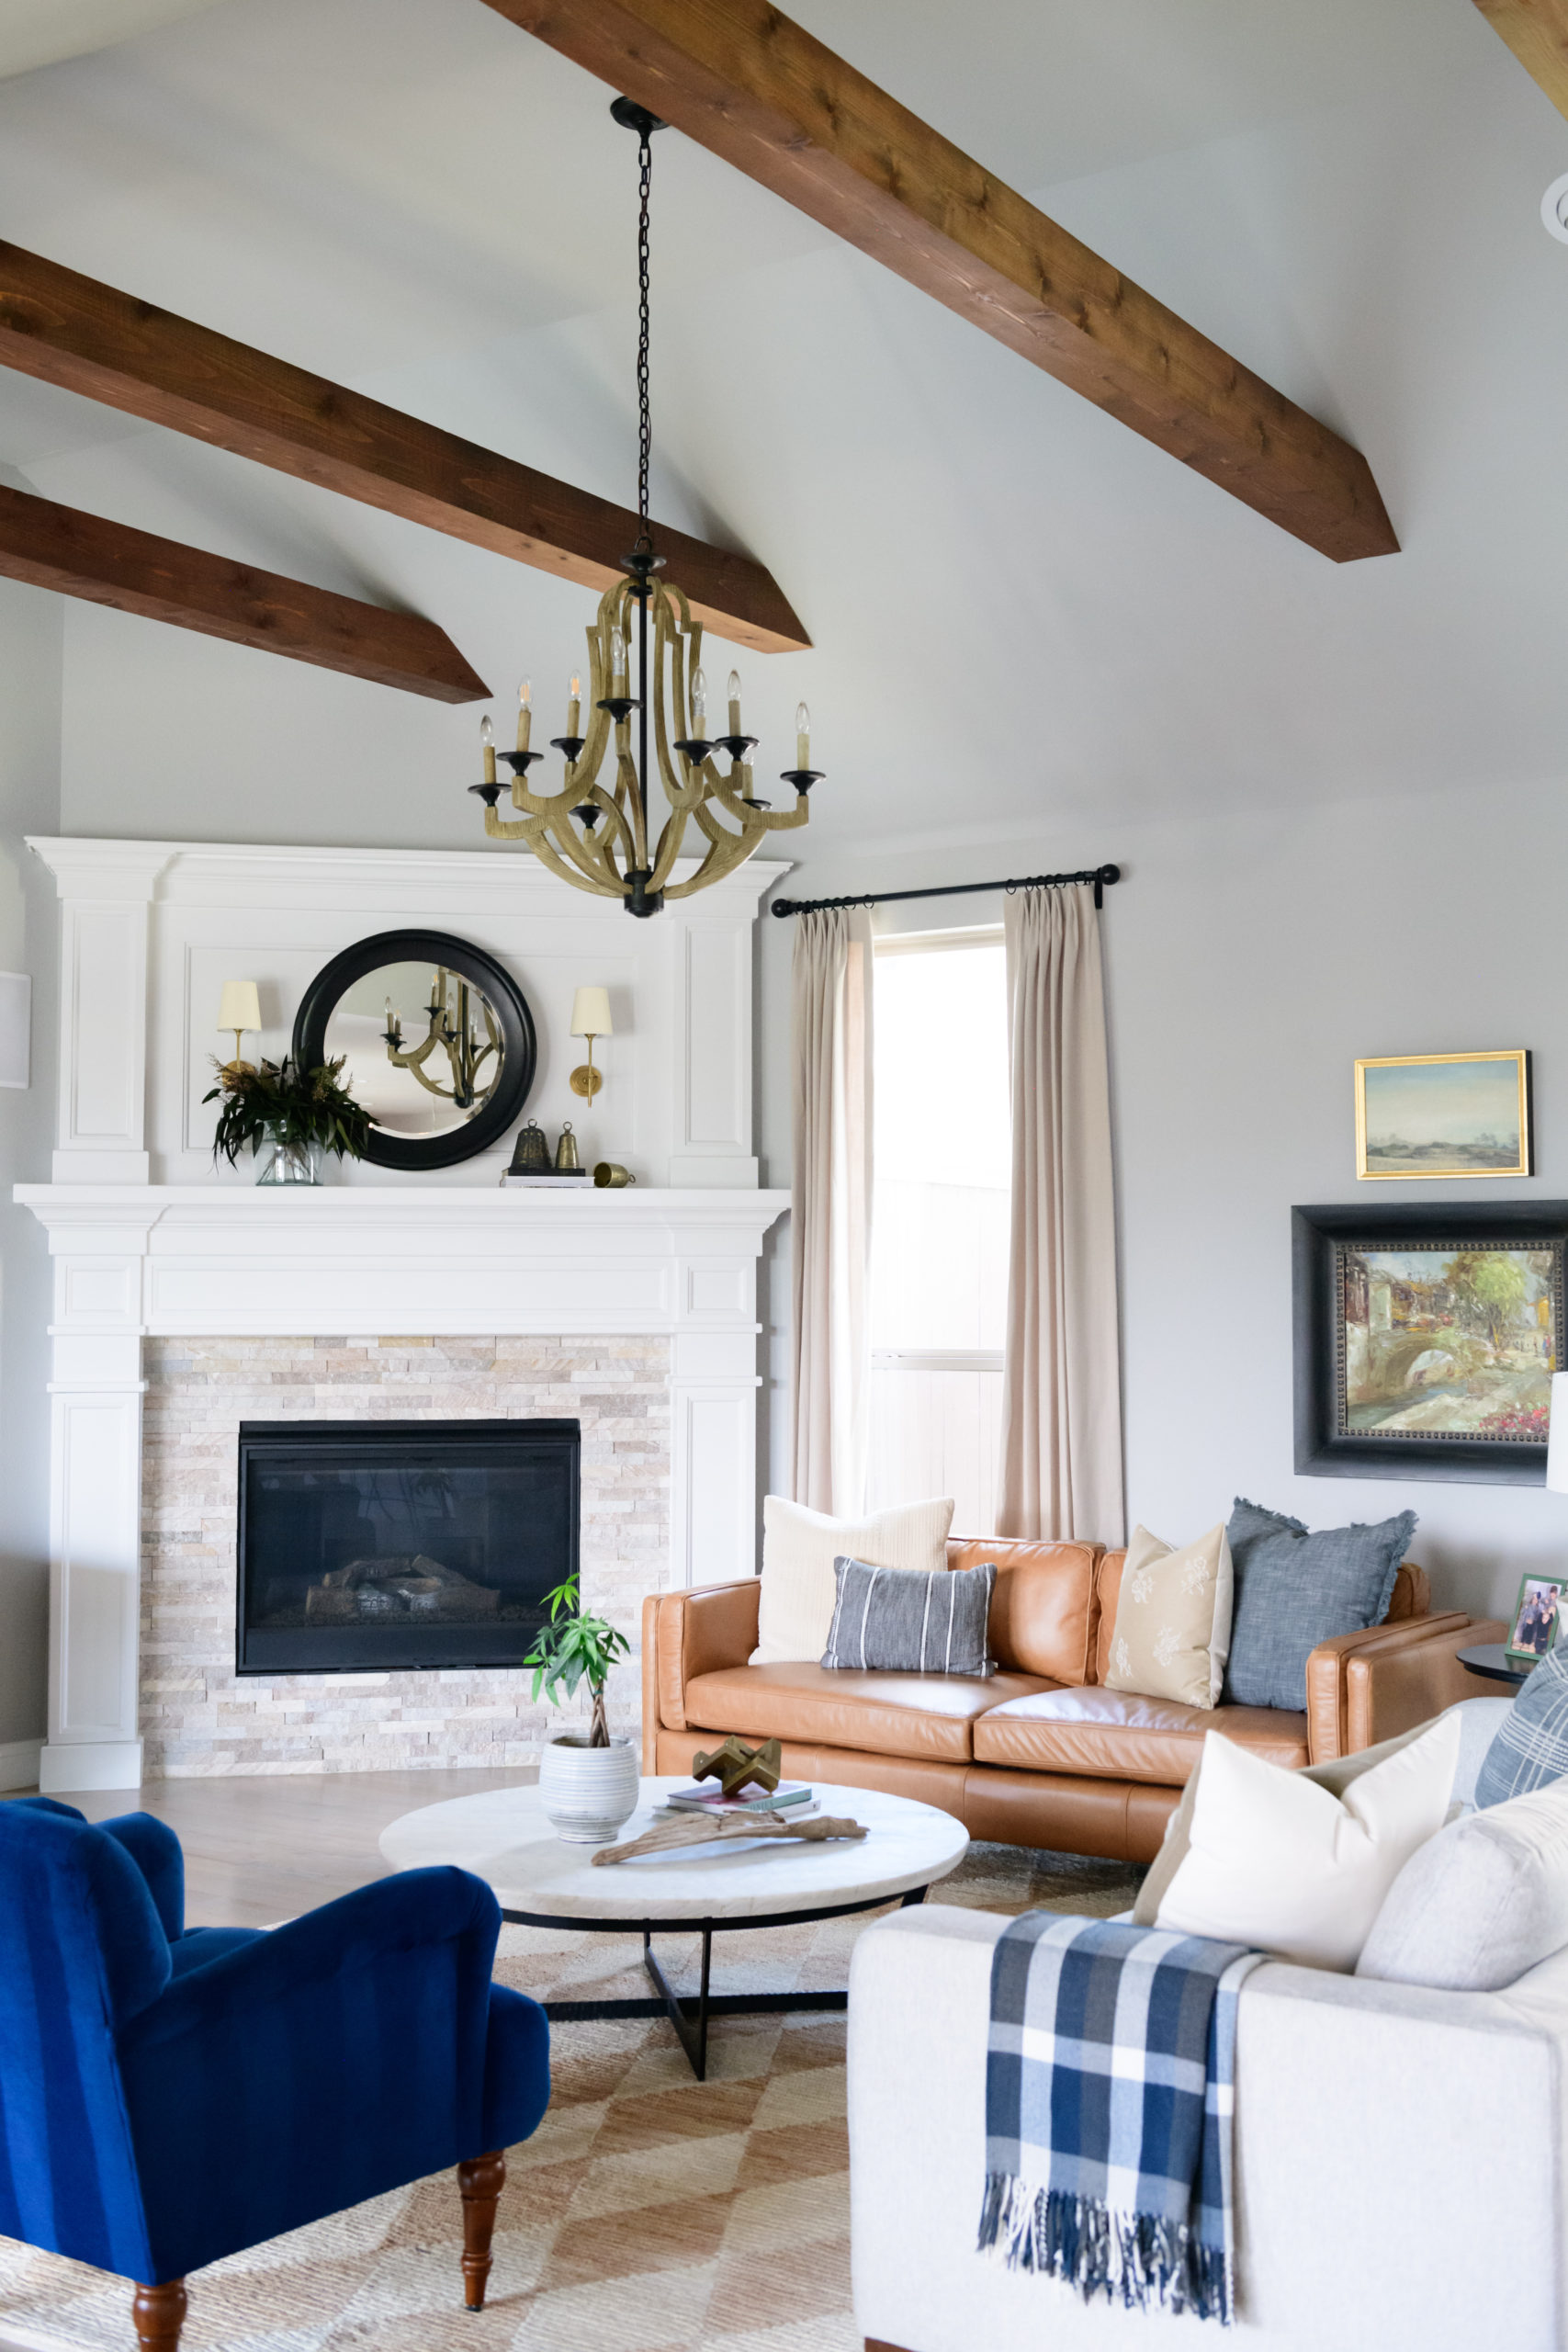 Living Room Reveal #interiordesign #livingroominspo #roominspo #homedecor #design #familyfriendlydesign #livingroomdecor #howtostylealivingroom 